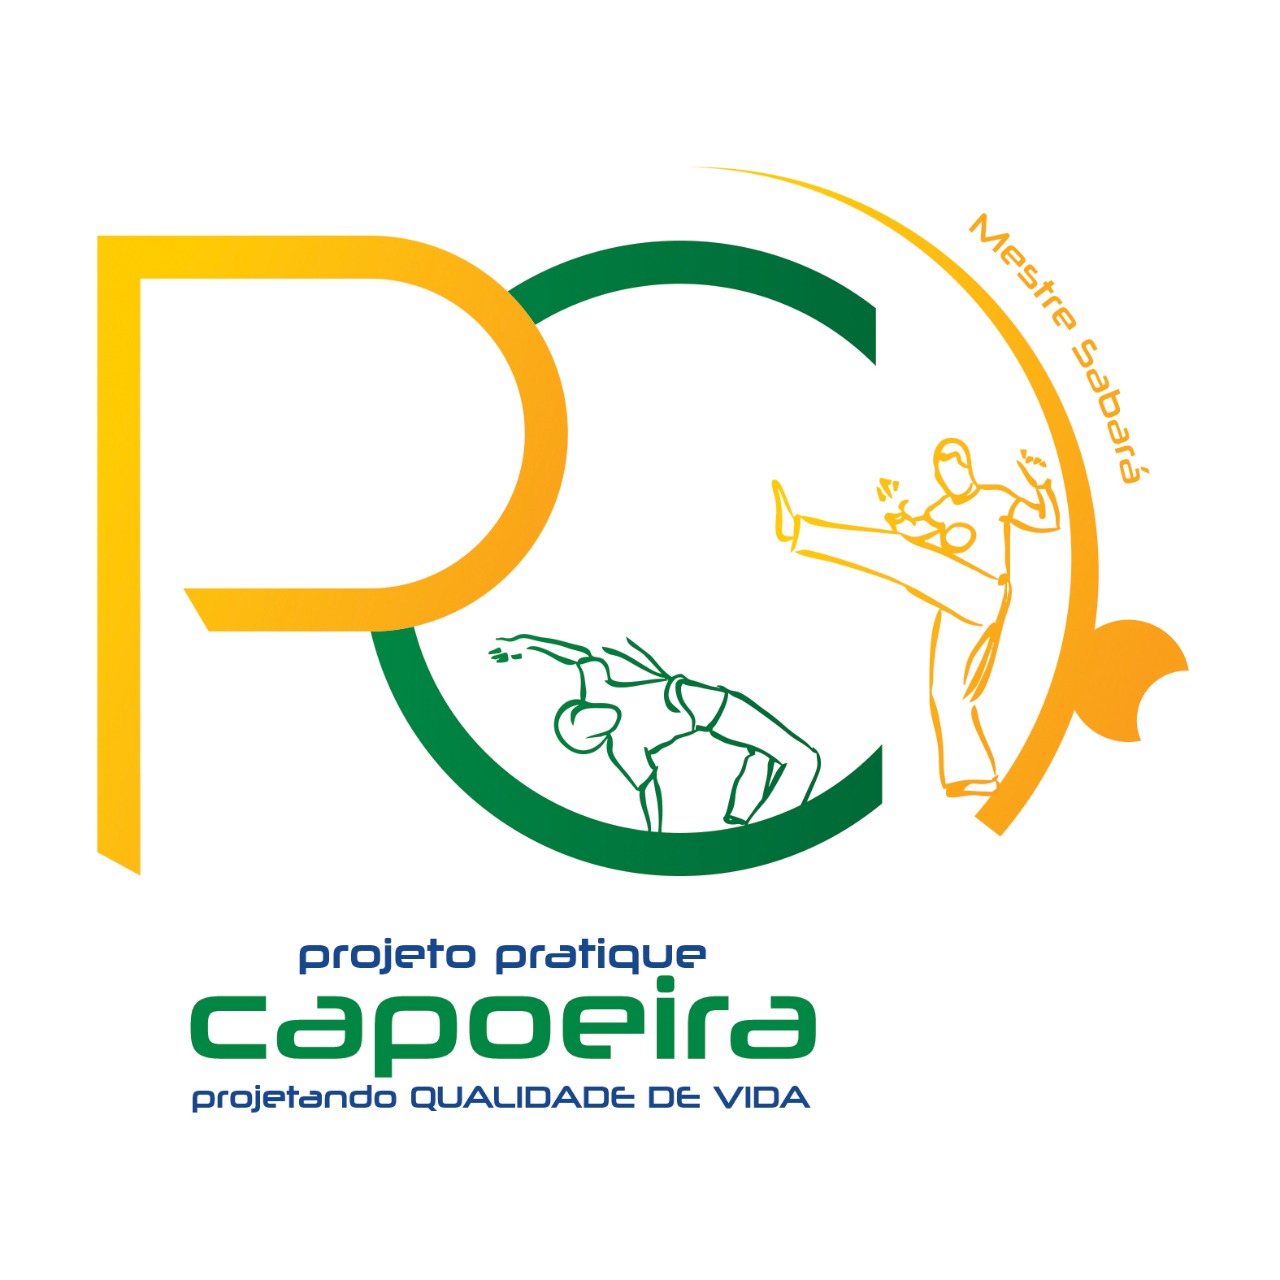 projeto pratique capoeira